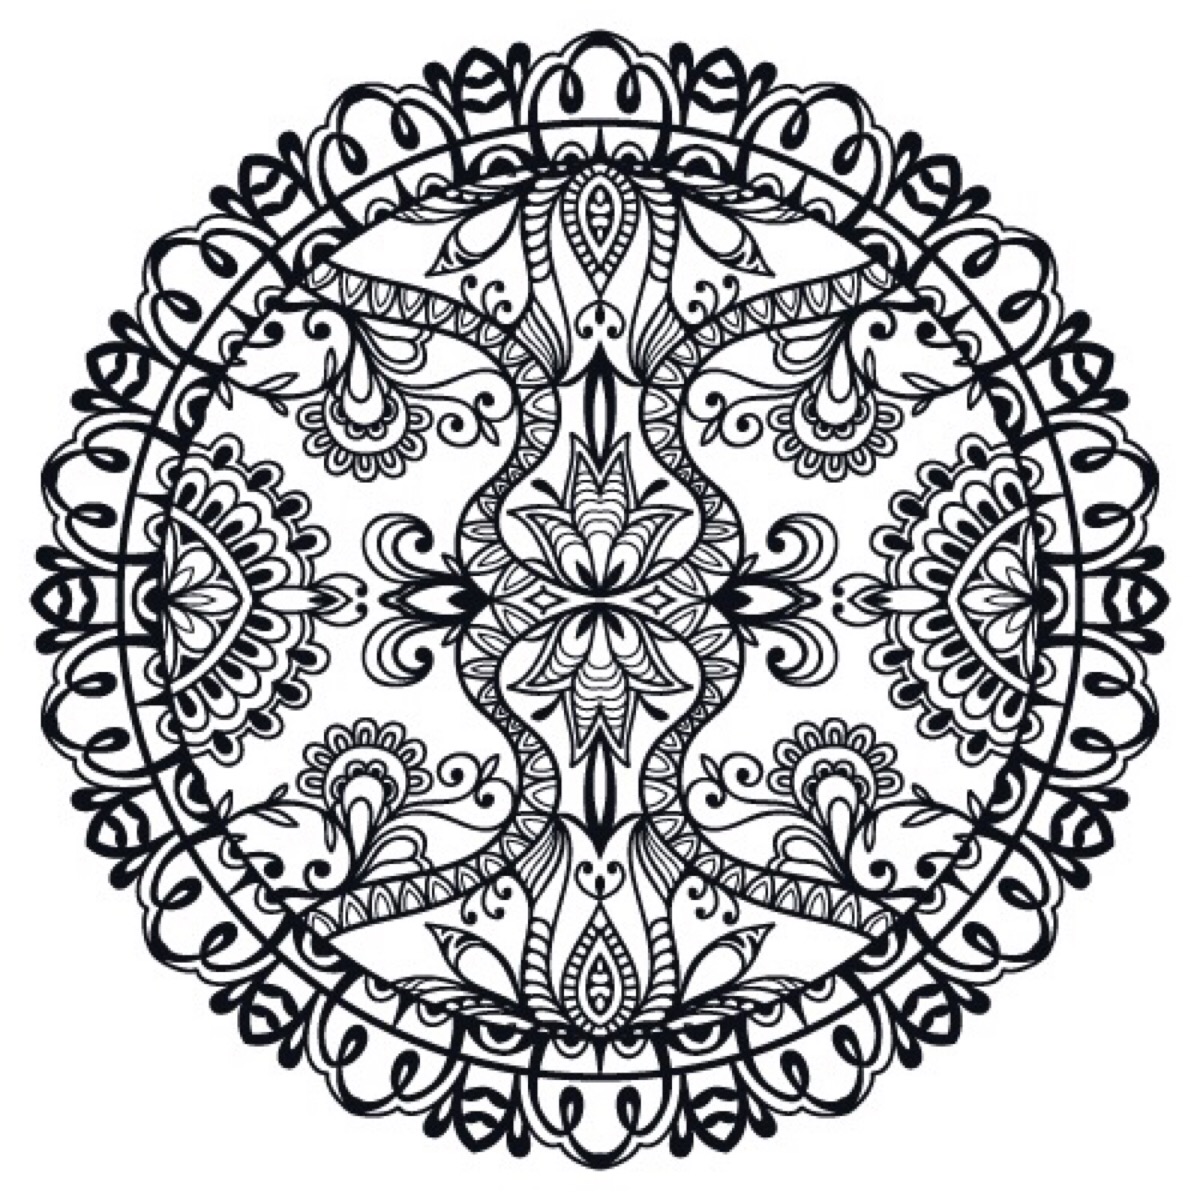 民族圆形花纹花卉藤蔓纹身图案曼陀罗纹身梵花图腾佩斯利花纹纹身手绘